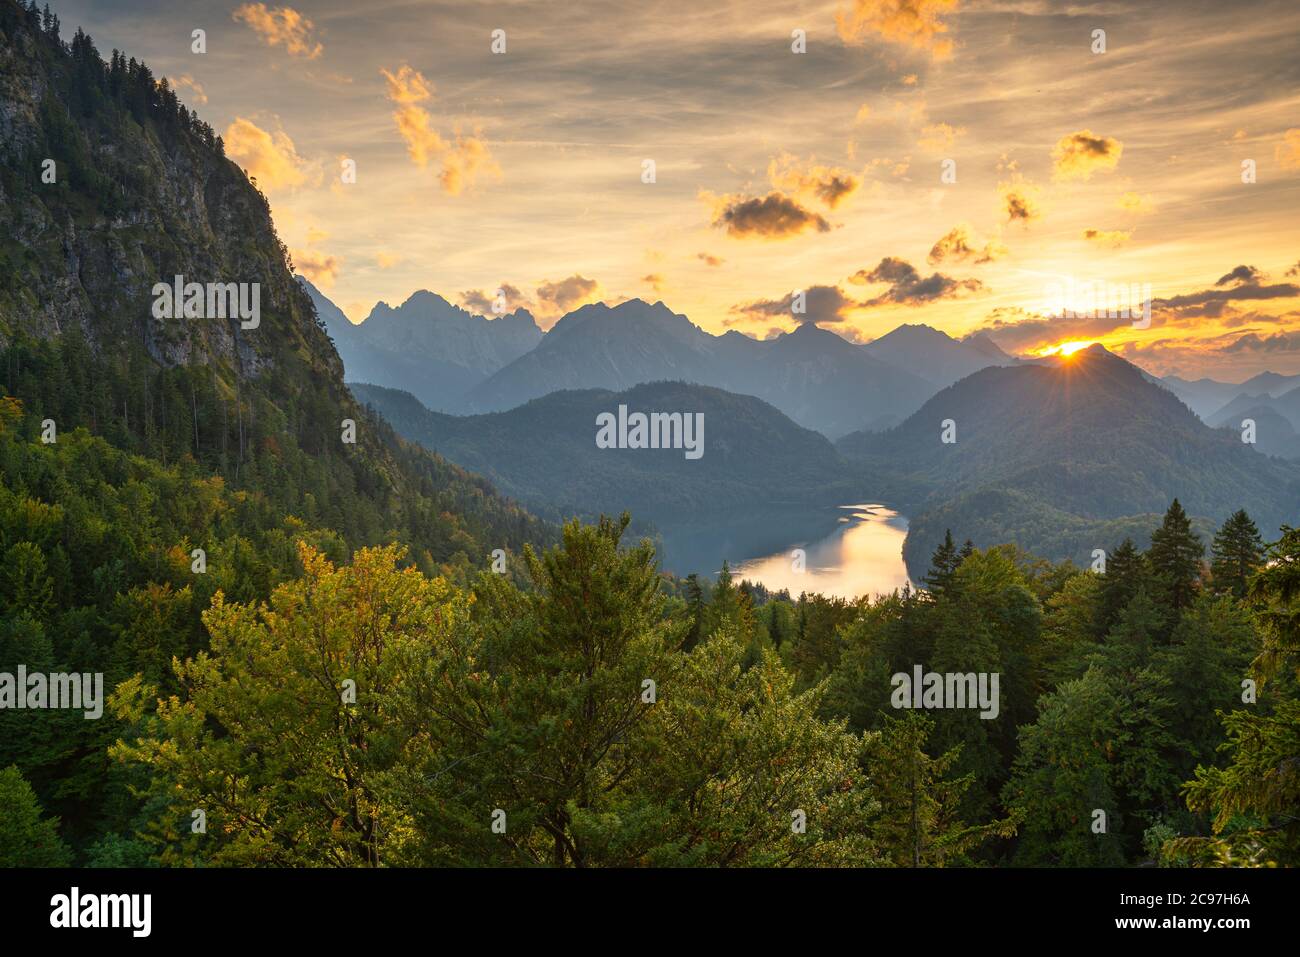 Paysage des Alpes bavaroises à Fussen, en Allemagne, avec le lac Alpsee au crépuscule. Banque D'Images